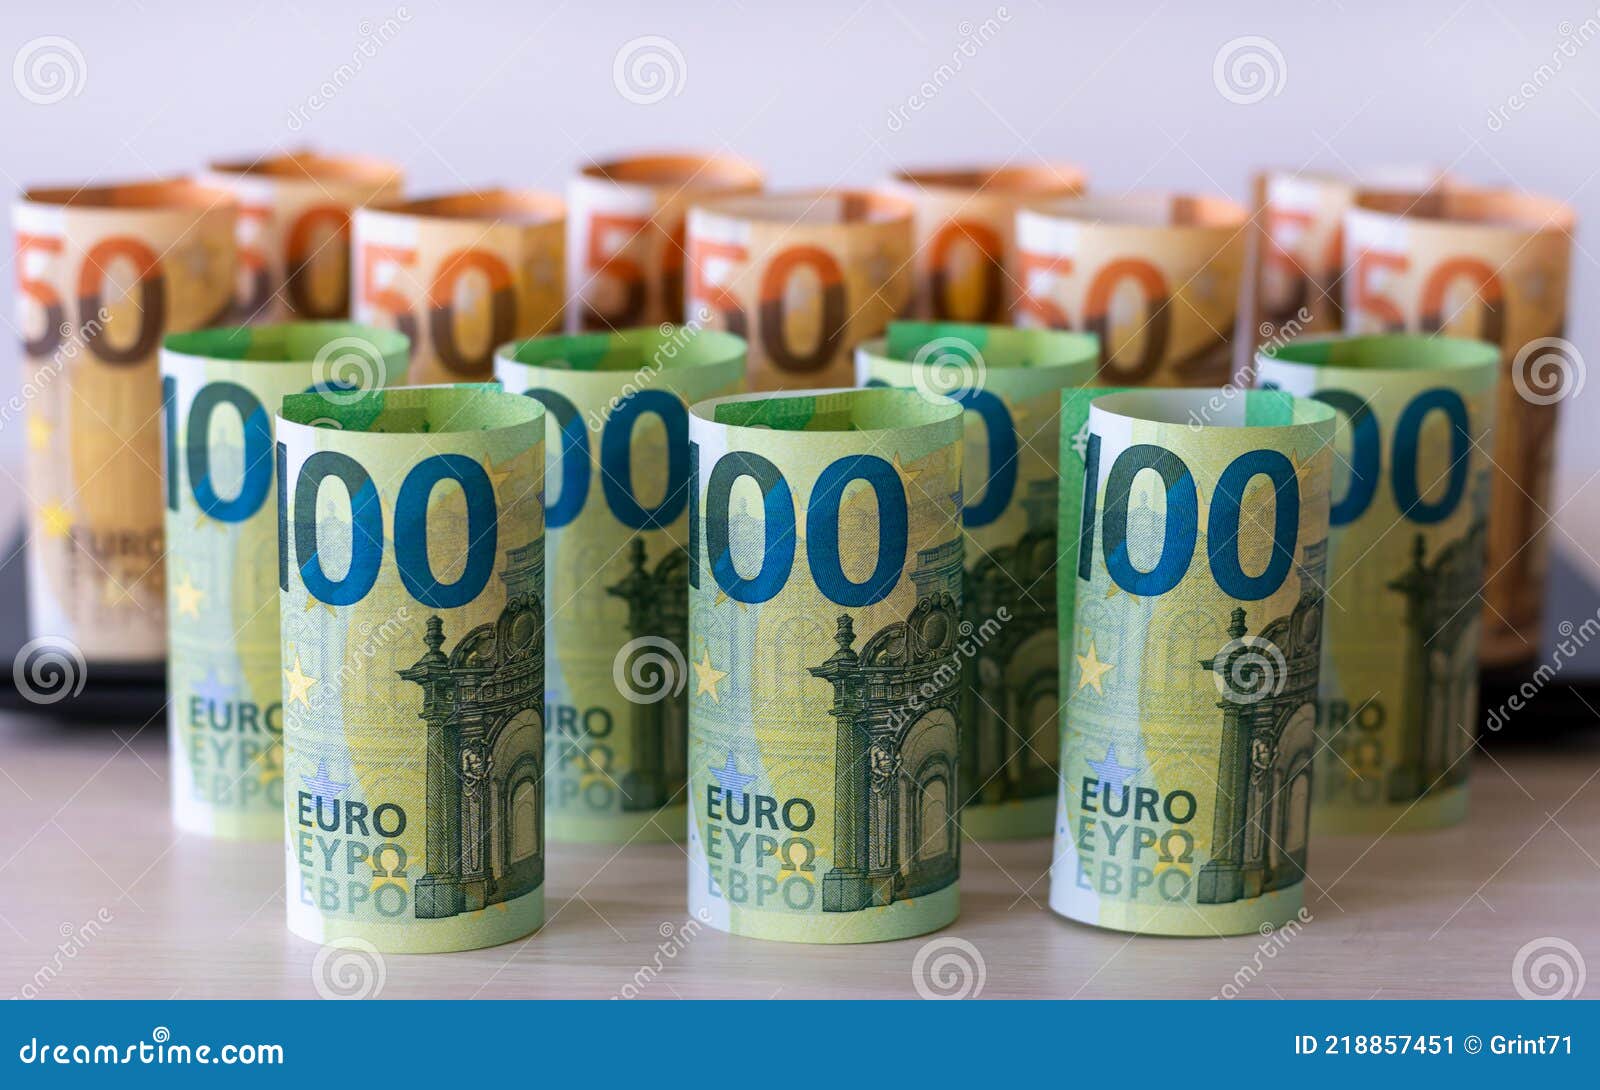 Cuantos euros son 1000 dolares en españa